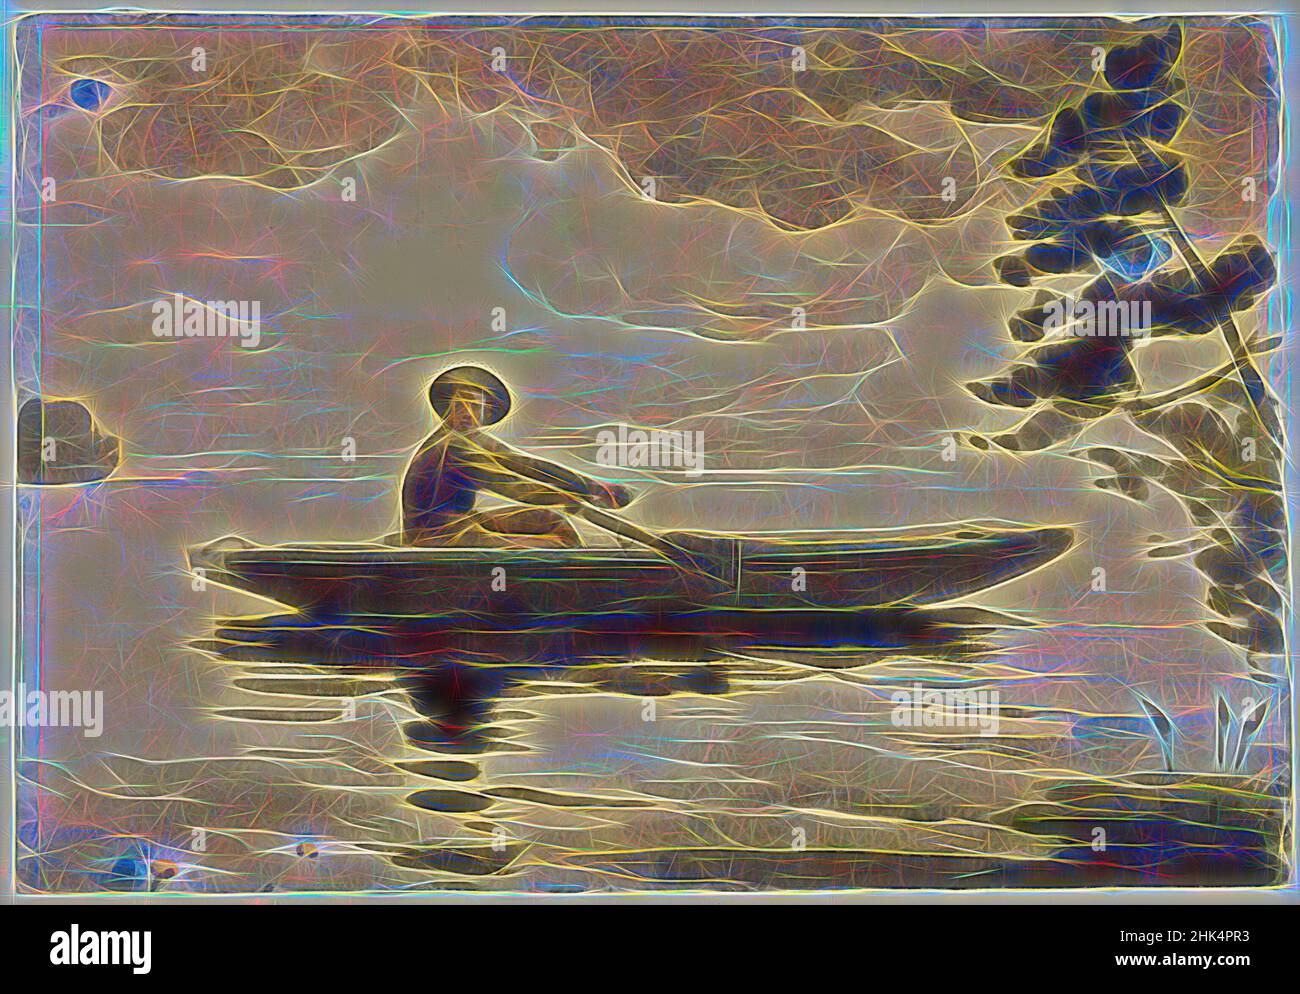 Inspiriert von The Boatman, Winslow Homer, American, 1836-1910, Aquarell mit Graphitstift-Unterzeichnung auf dickem, strukturiertem Wove-Papier, 1891, 13 15/16 x 20 Zoll, 35,4 x 50,8 cm, 19th Jahrhundert, amerikanische Kunst, Boot, Bootsmann, see, ndd8, im Freien, Malerei, Kiefer, placid, rudern, einsam, Einsamkeit, neu erfunden von Artotop. Klassische Kunst neu erfunden mit einem modernen Twist. Design von warmen fröhlichen Leuchten der Helligkeit und Lichtstrahl Strahlkraft. Fotografie inspiriert von Surrealismus und Futurismus, umarmt dynamische Energie der modernen Technologie, Bewegung, Geschwindigkeit und Kultur zu revolutionieren Stockfoto